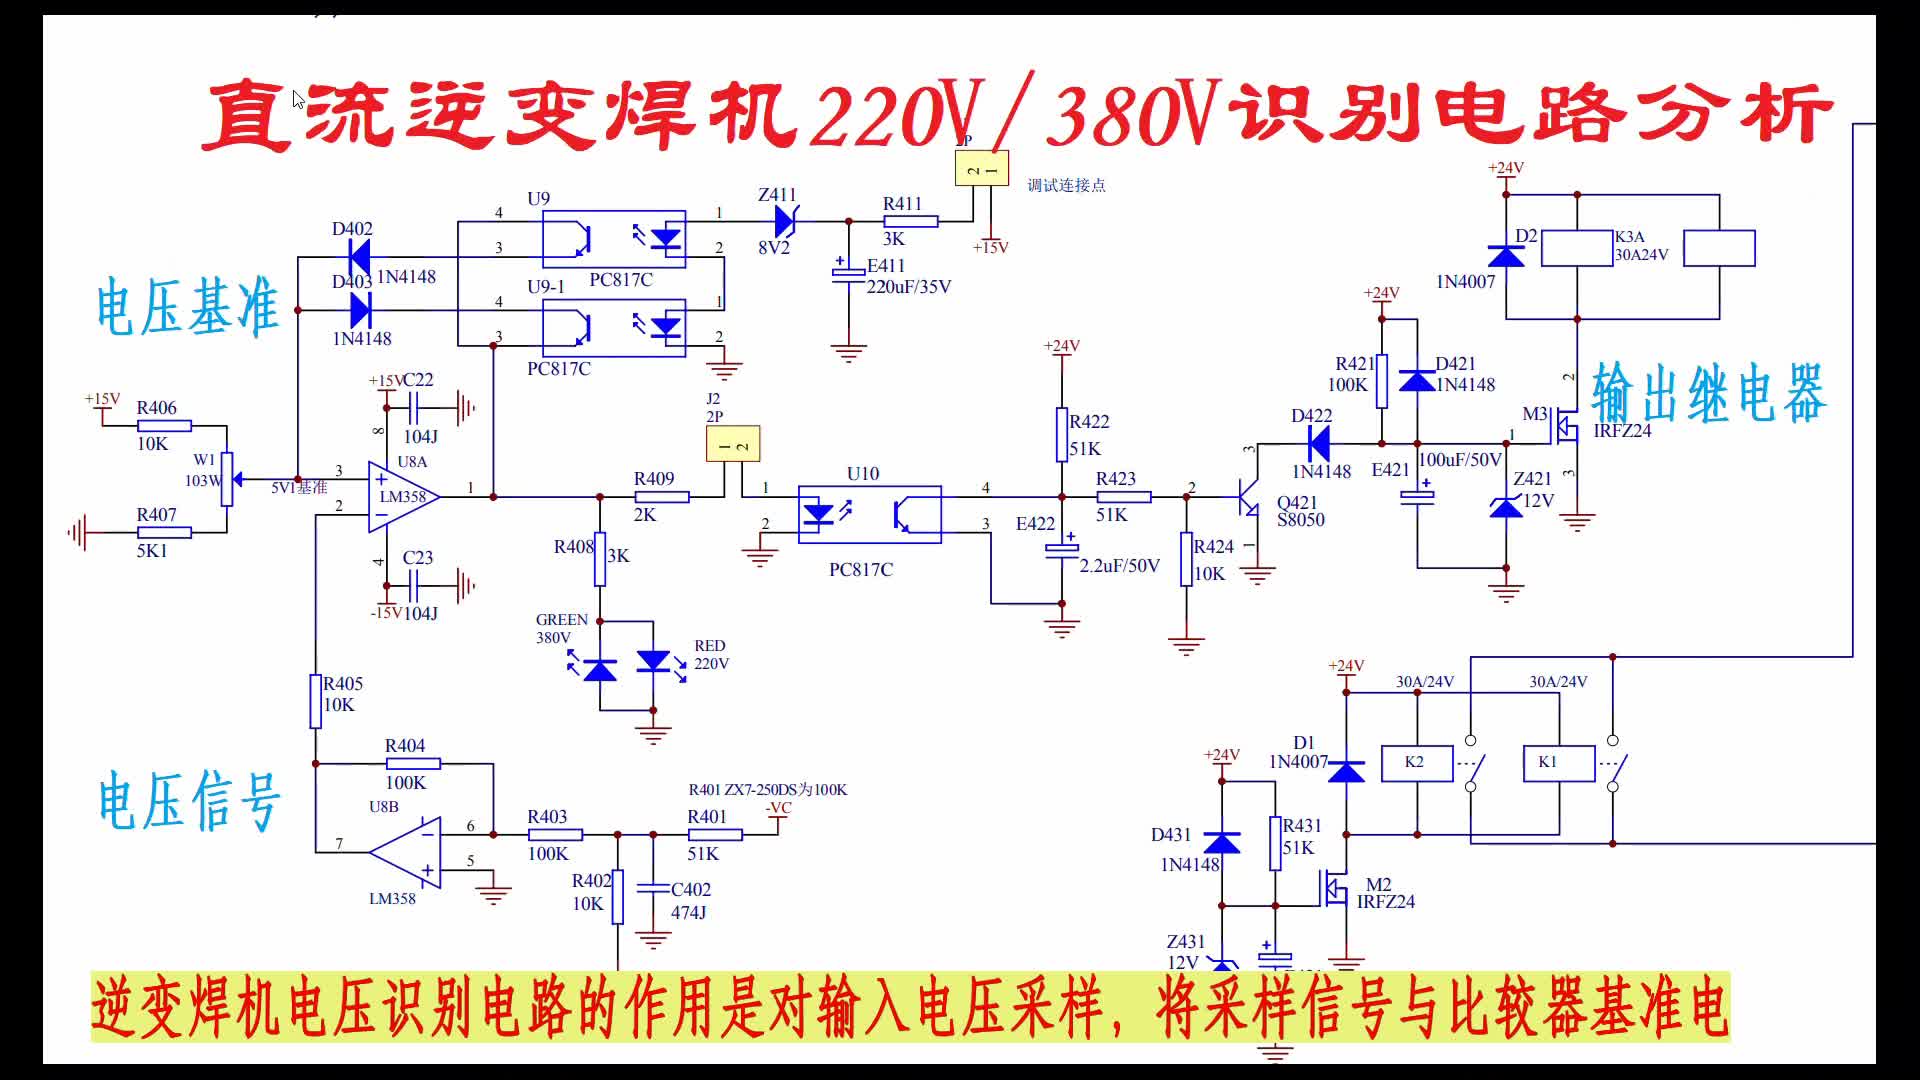 電焊機220V、380V電壓自動識別電路分析#電路設計 